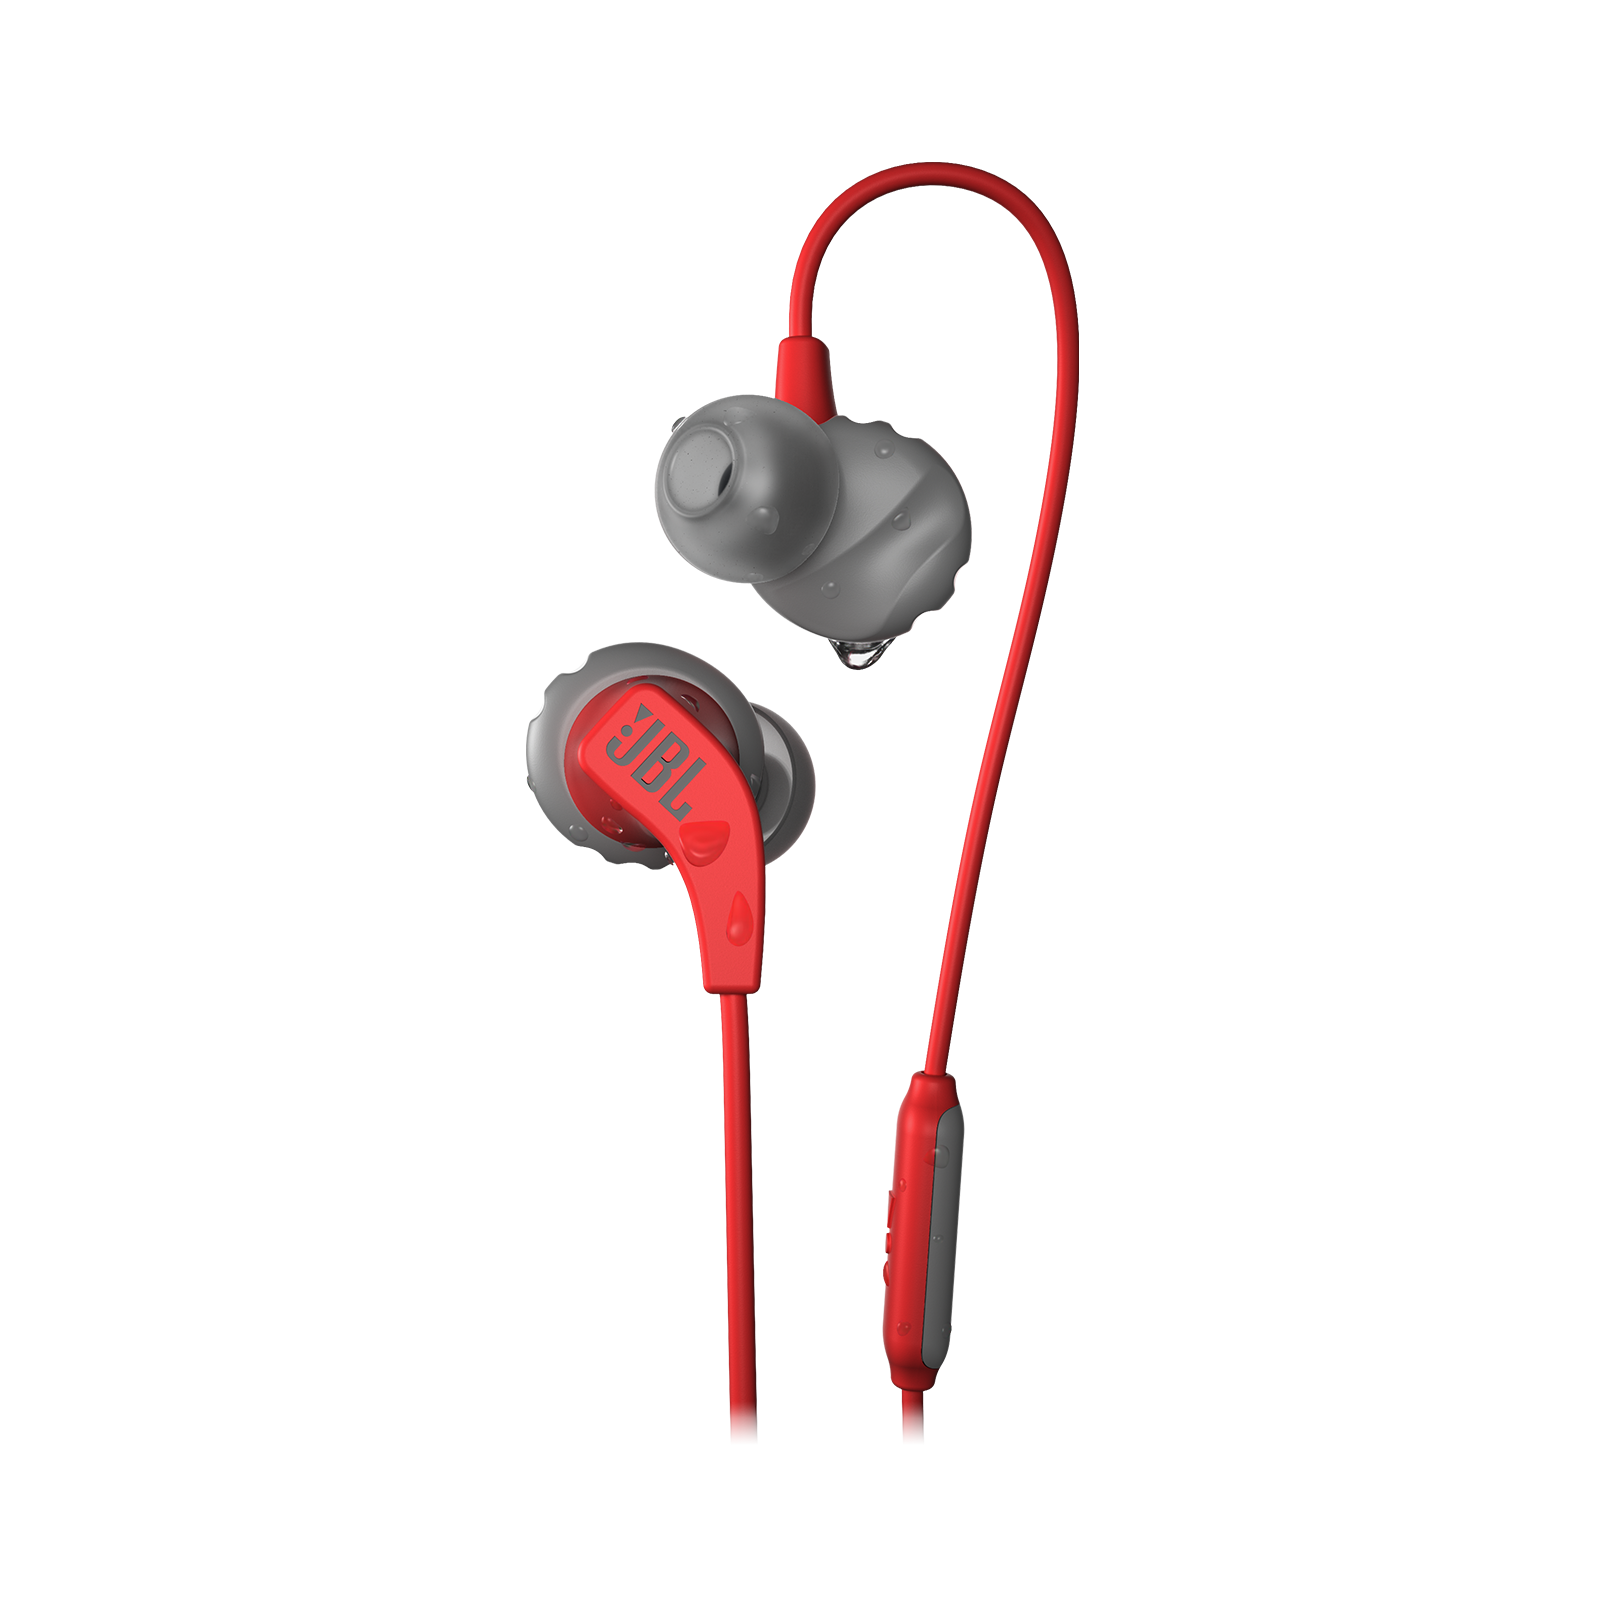 JBL Endurance RUN - Red - Sweatproof Wired Sport In-Ear Headphones - Hero